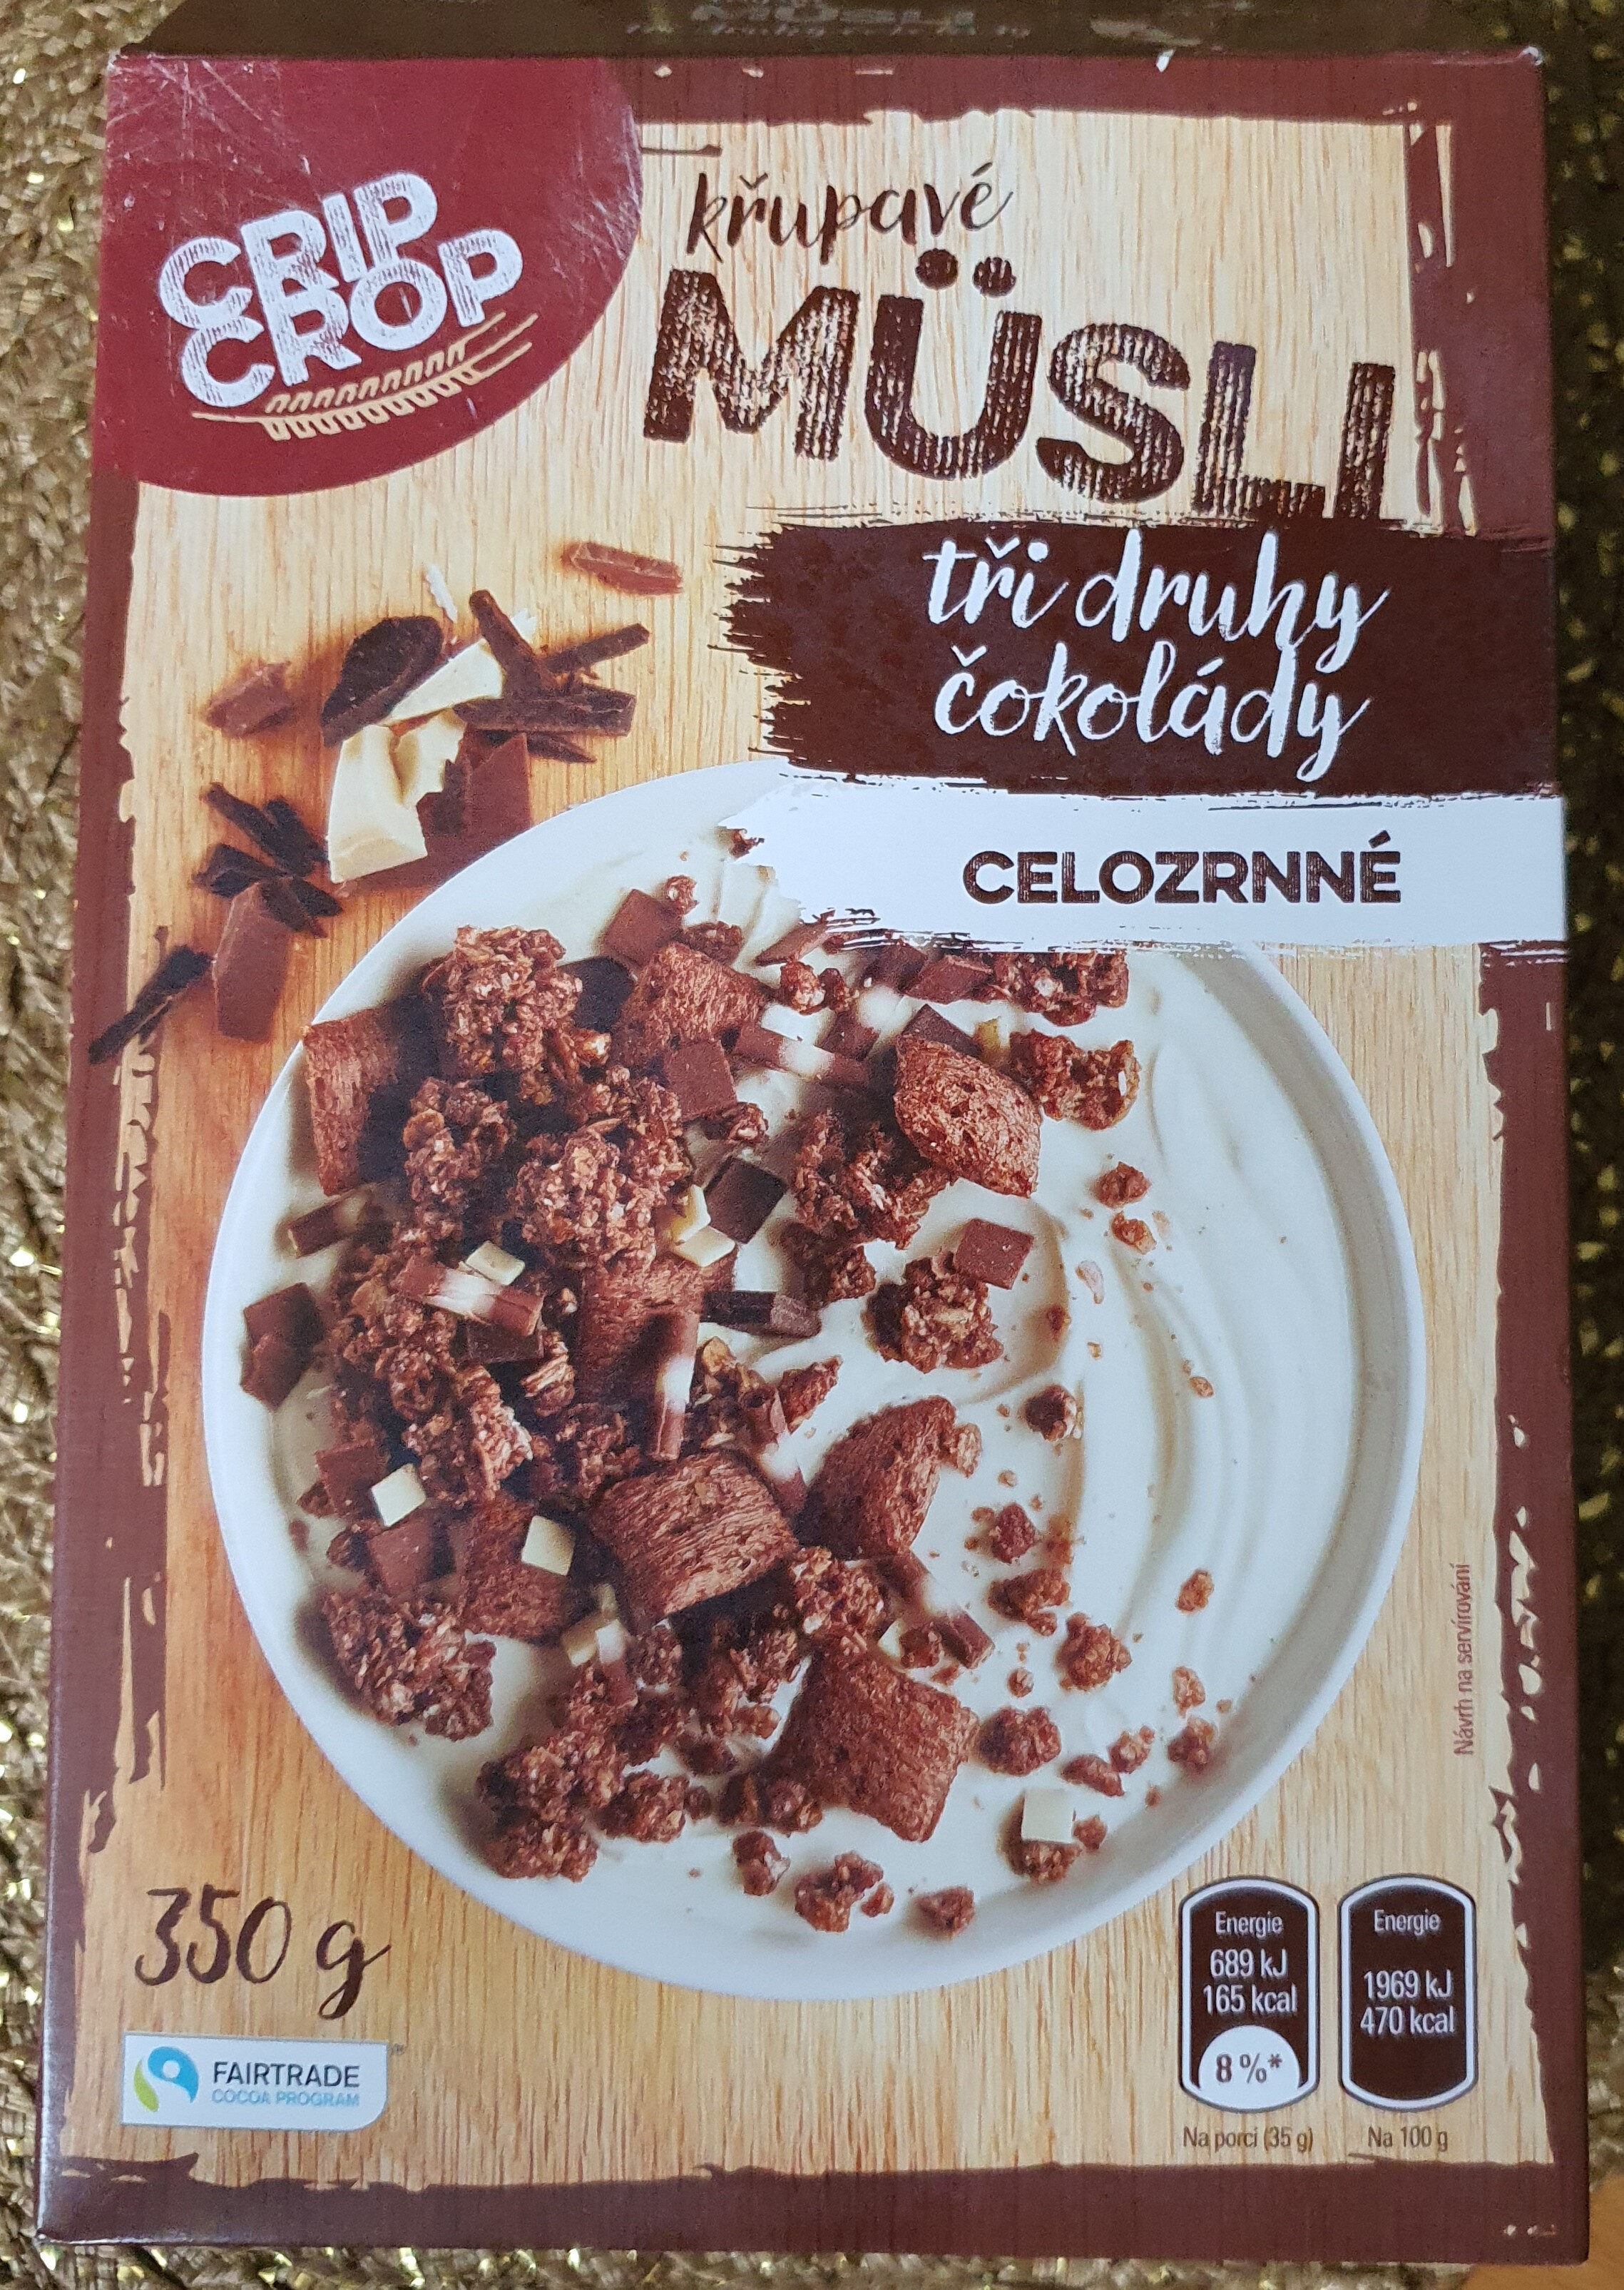 křupavé MÜSLI tři druhy čokolády CELOZRNNÉ - Product - cs